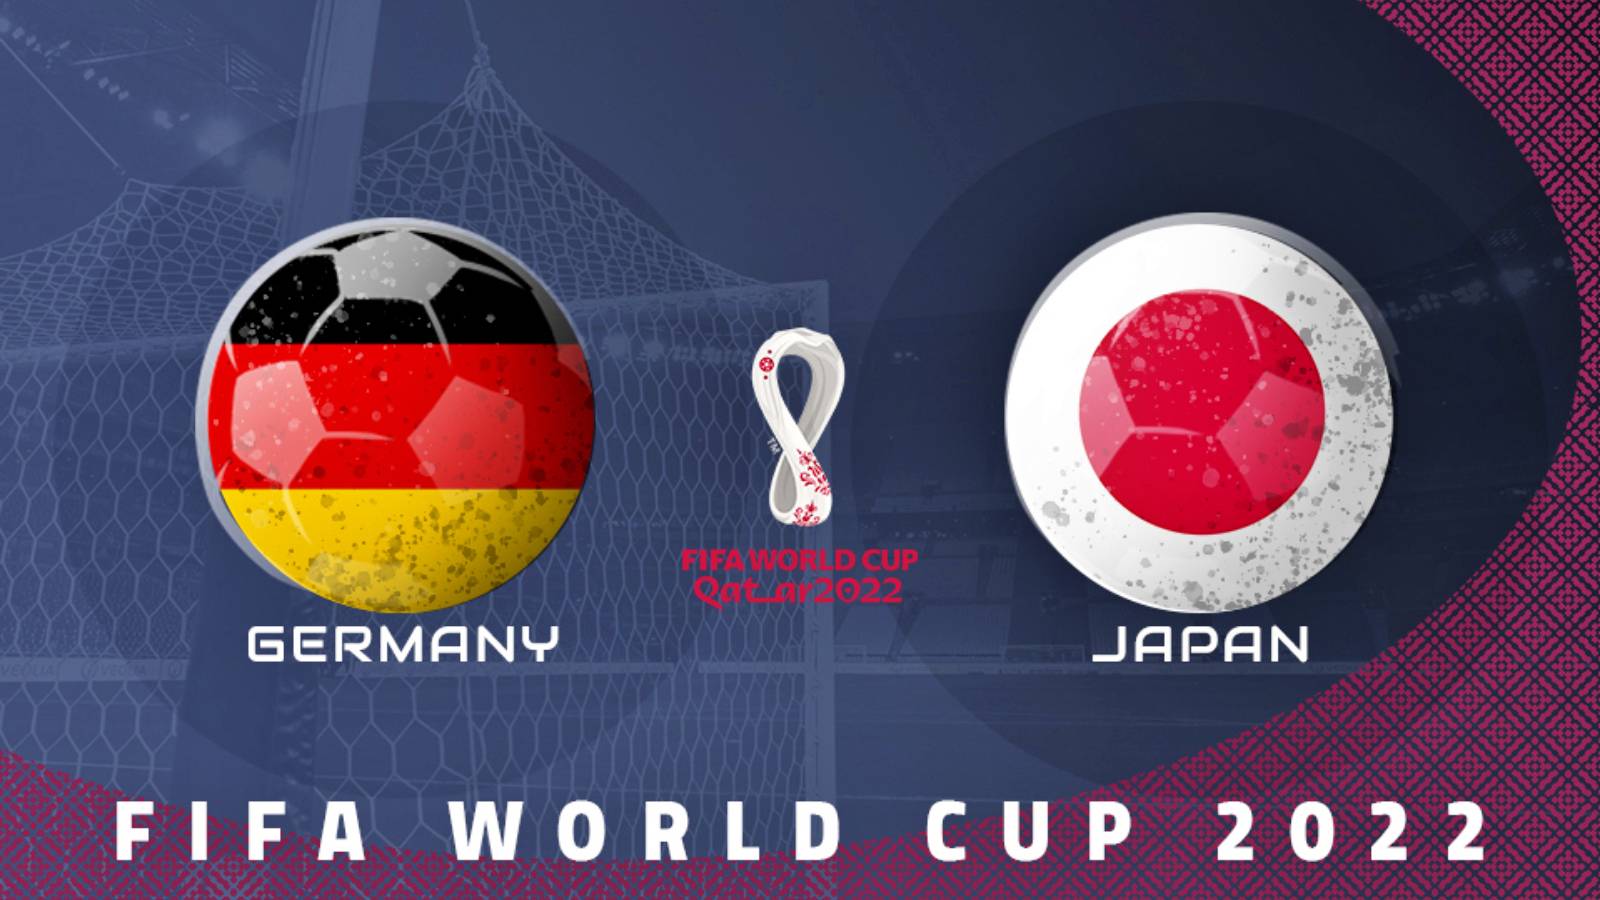 ALLEMAGNE – JAPON TVR 1 MATCH EN DIRECT CHAMPIONNAT DU MONDE DE FOOTBALL 2022 QATAR